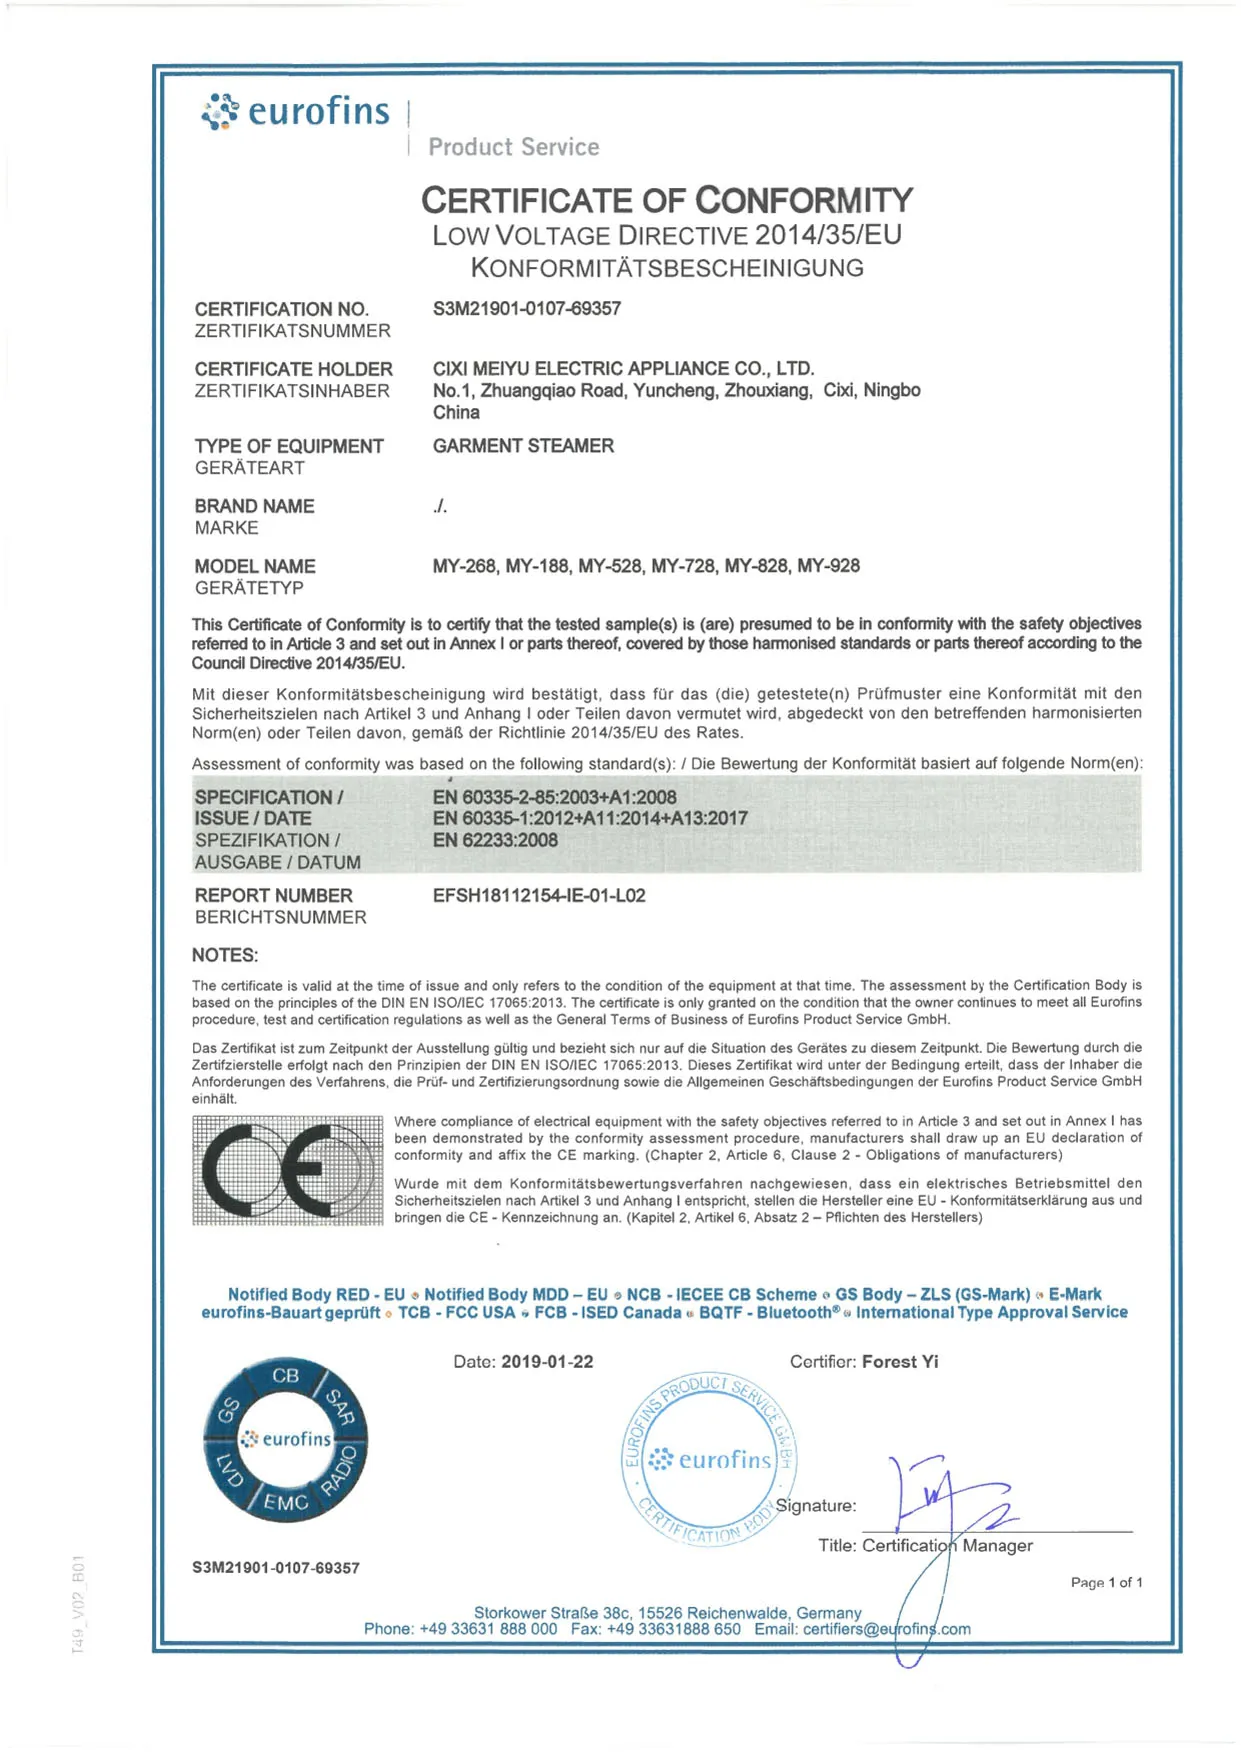 LVD-sertifikaatti S3M21901-0107-69357_LVD CoC